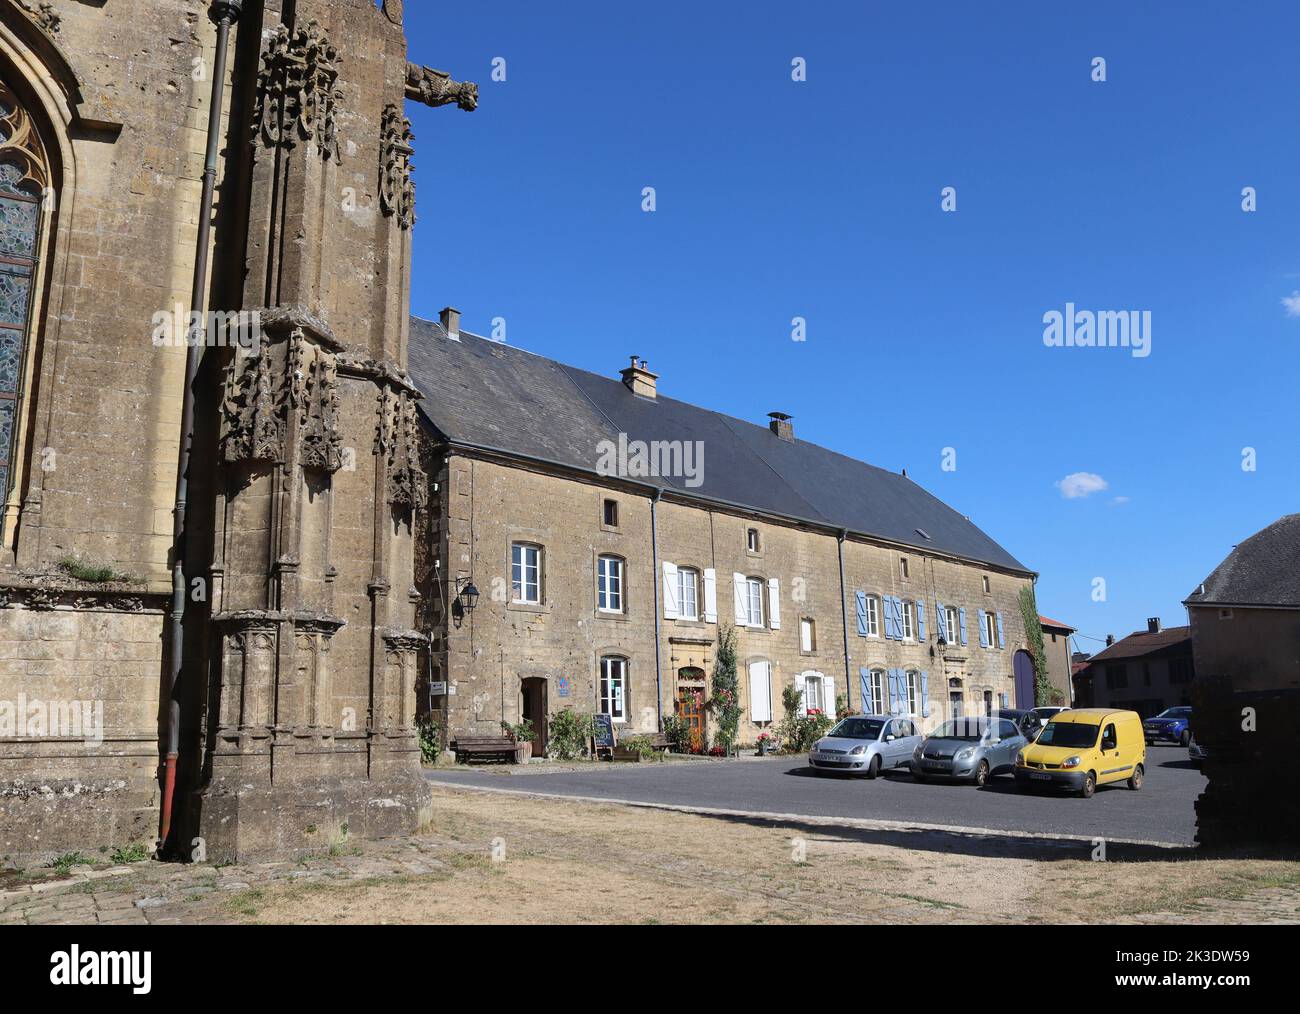 MONTMEDY, FRANCE, 3 AOÛT 2022 : vue sur l'office de tourisme et le village d'Avioth, près de Montmedy dans la région de Meuse en France. Avioth est la maison des Basili Banque D'Images